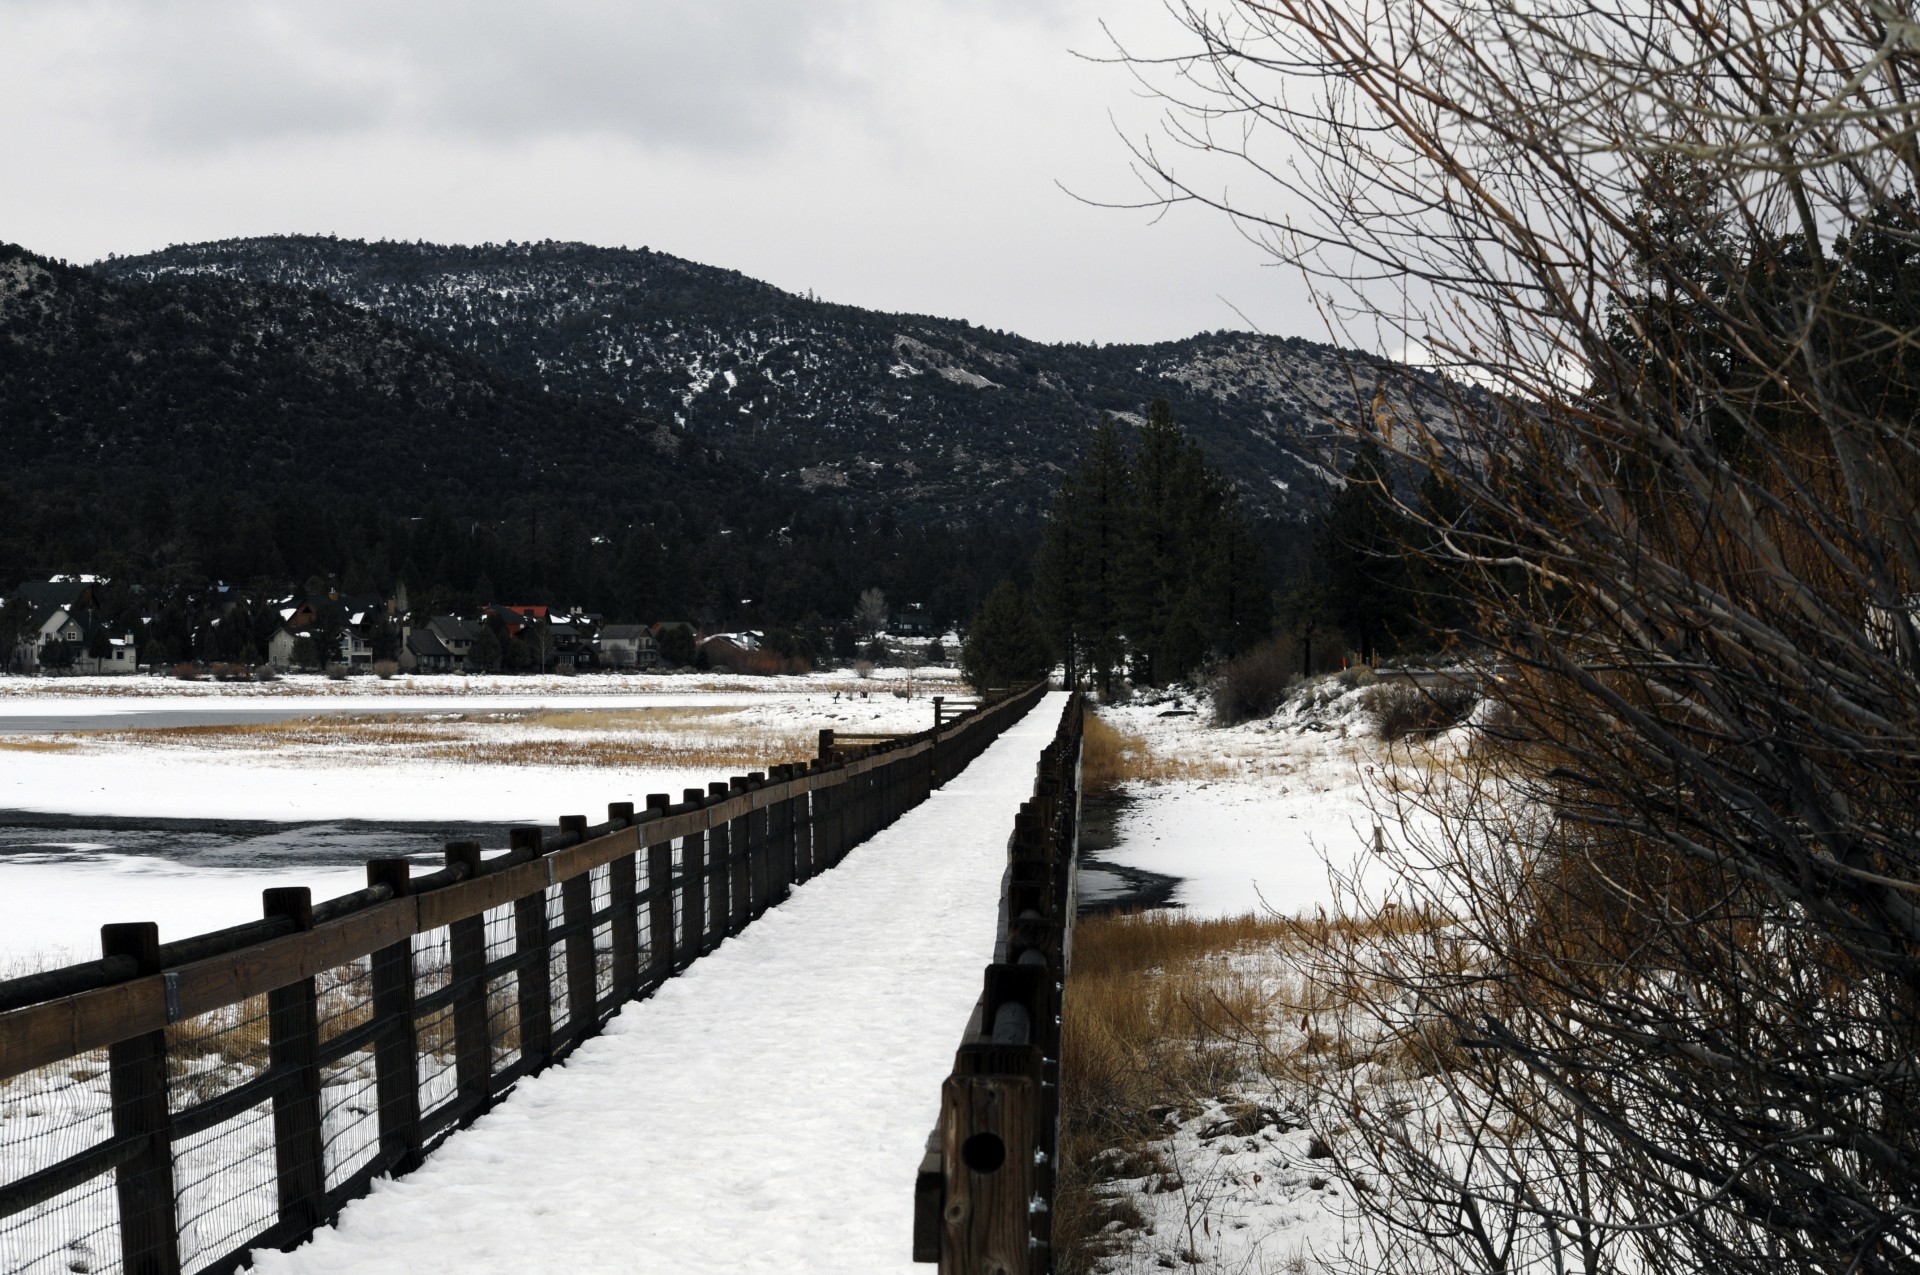 Snow Covered Bridge